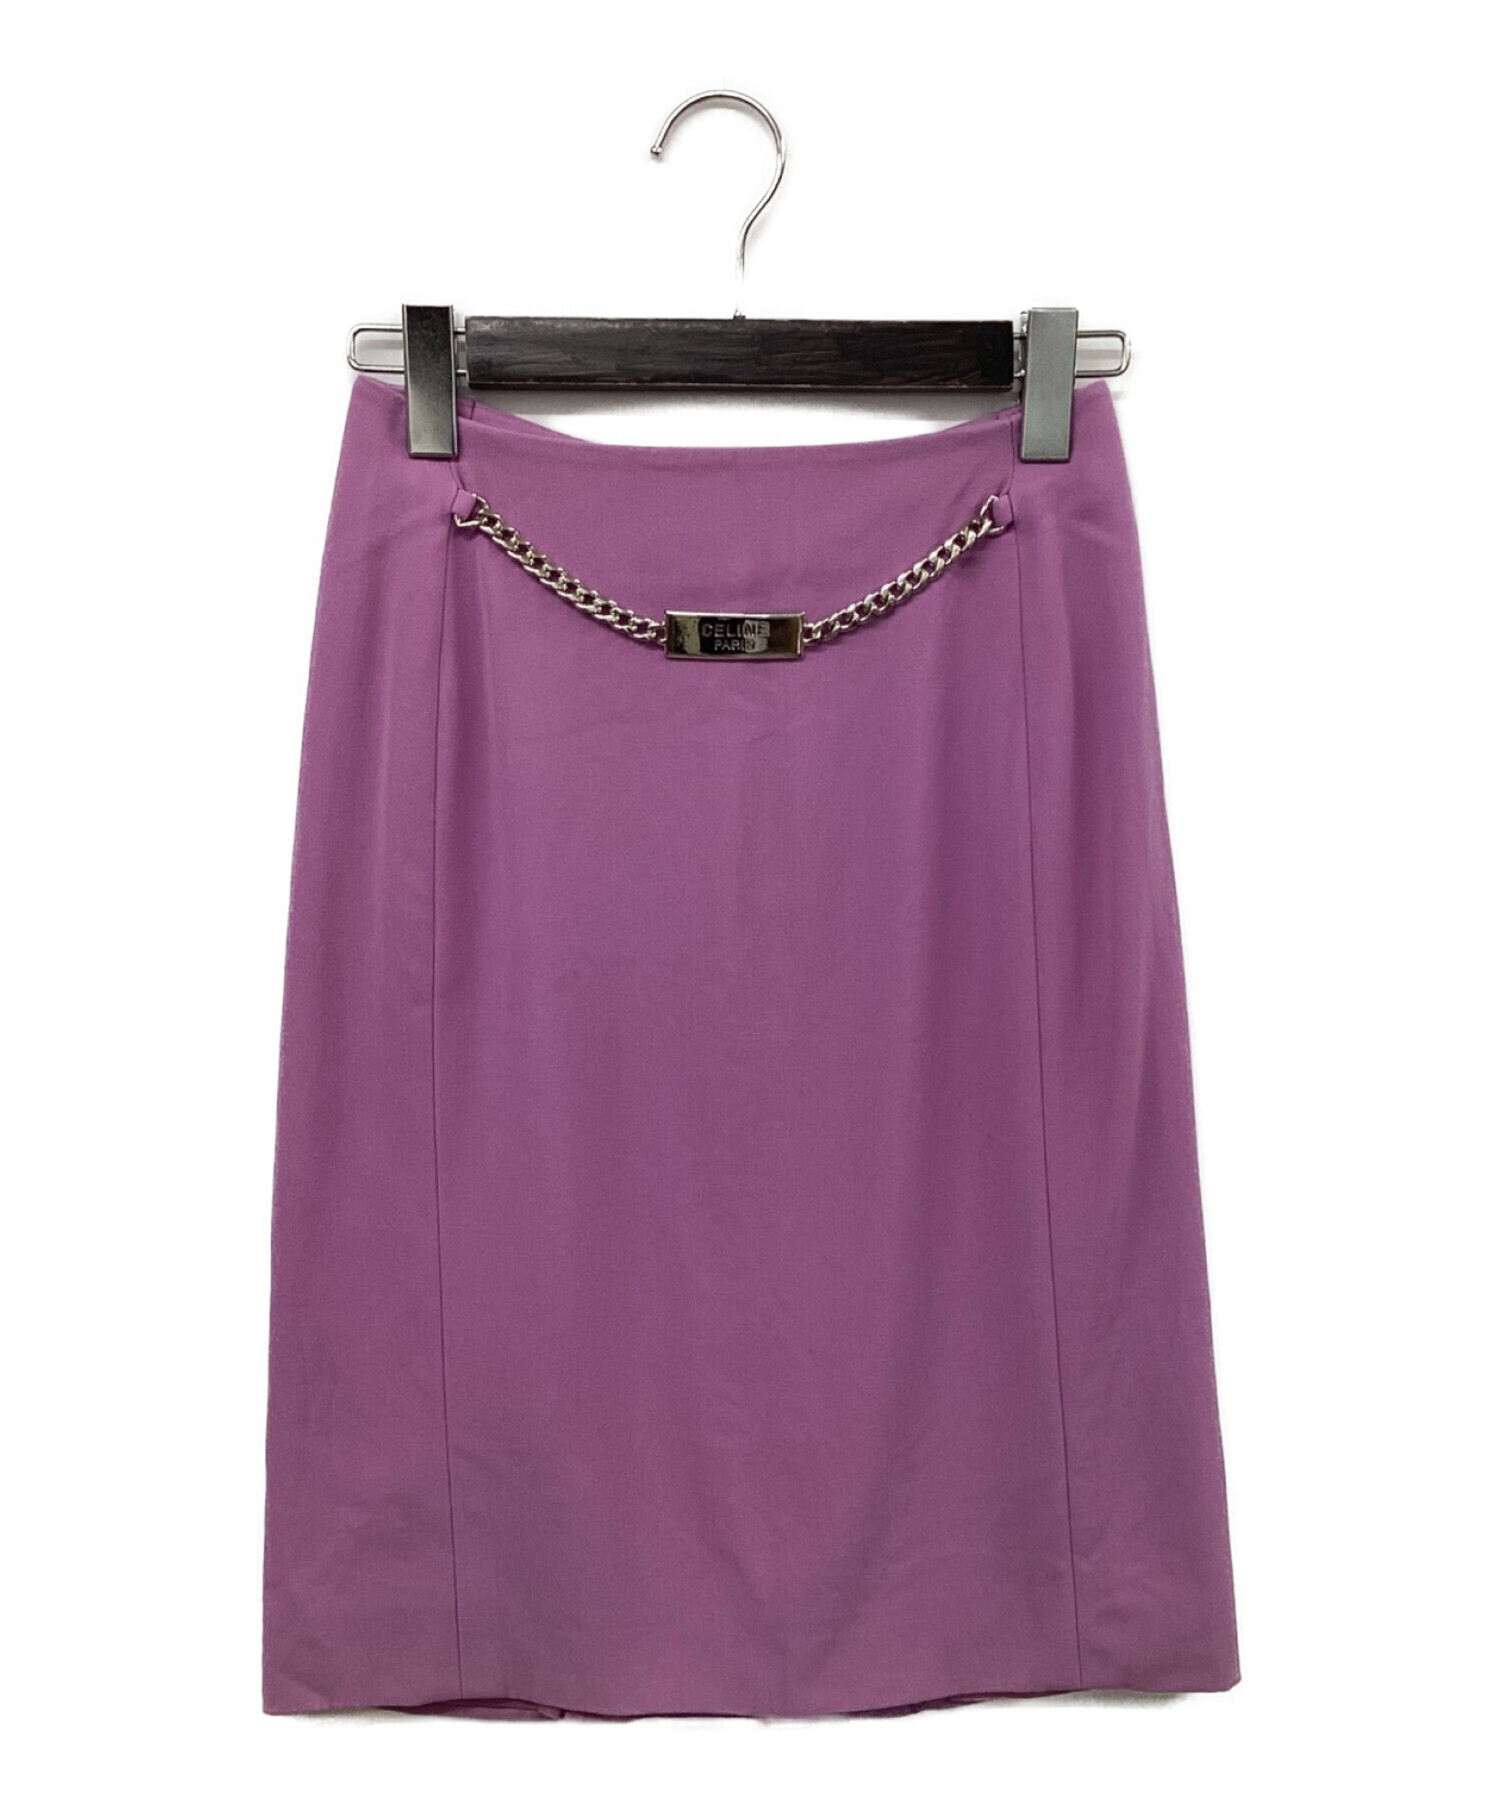 CELINE (セリーヌ) ロゴプレートメタルチェーンスカート パープル サイズ:SIZE 38